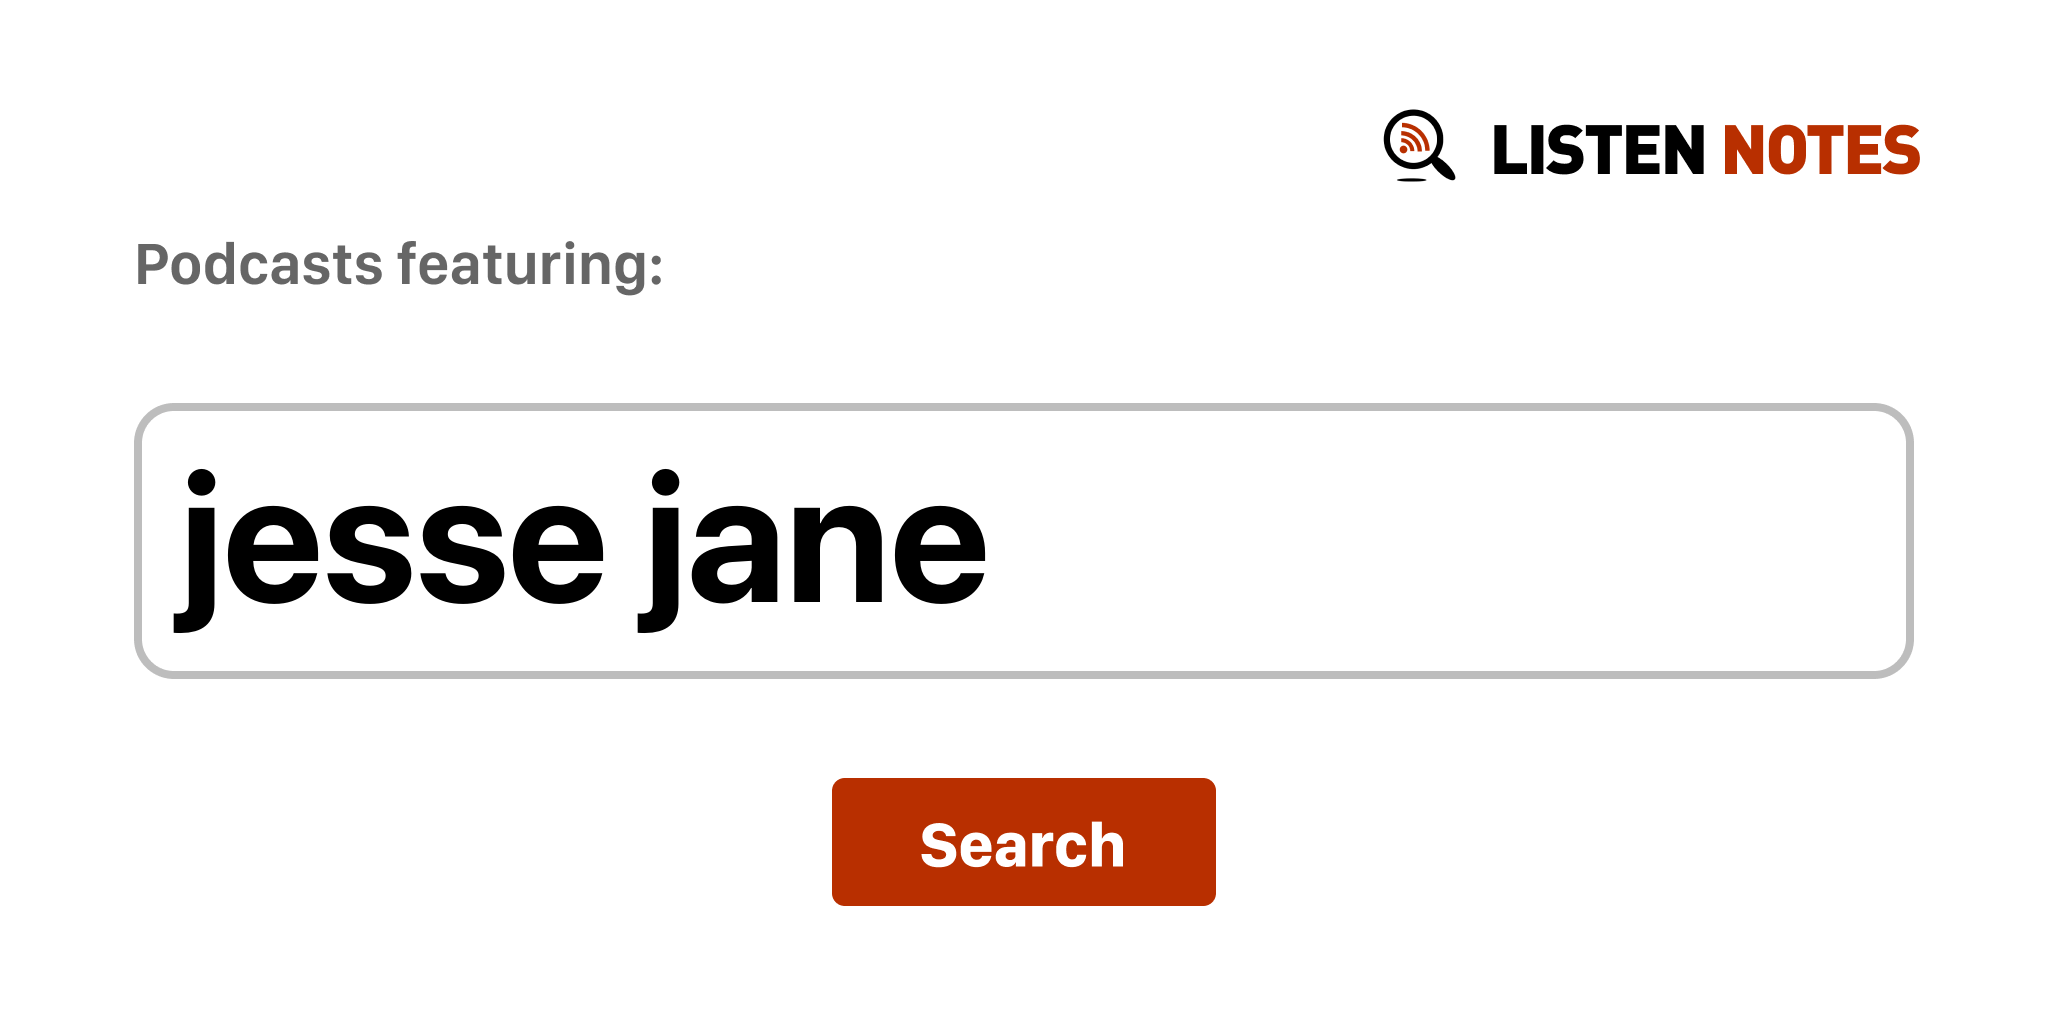 Jane retired jesse Jesse Jane